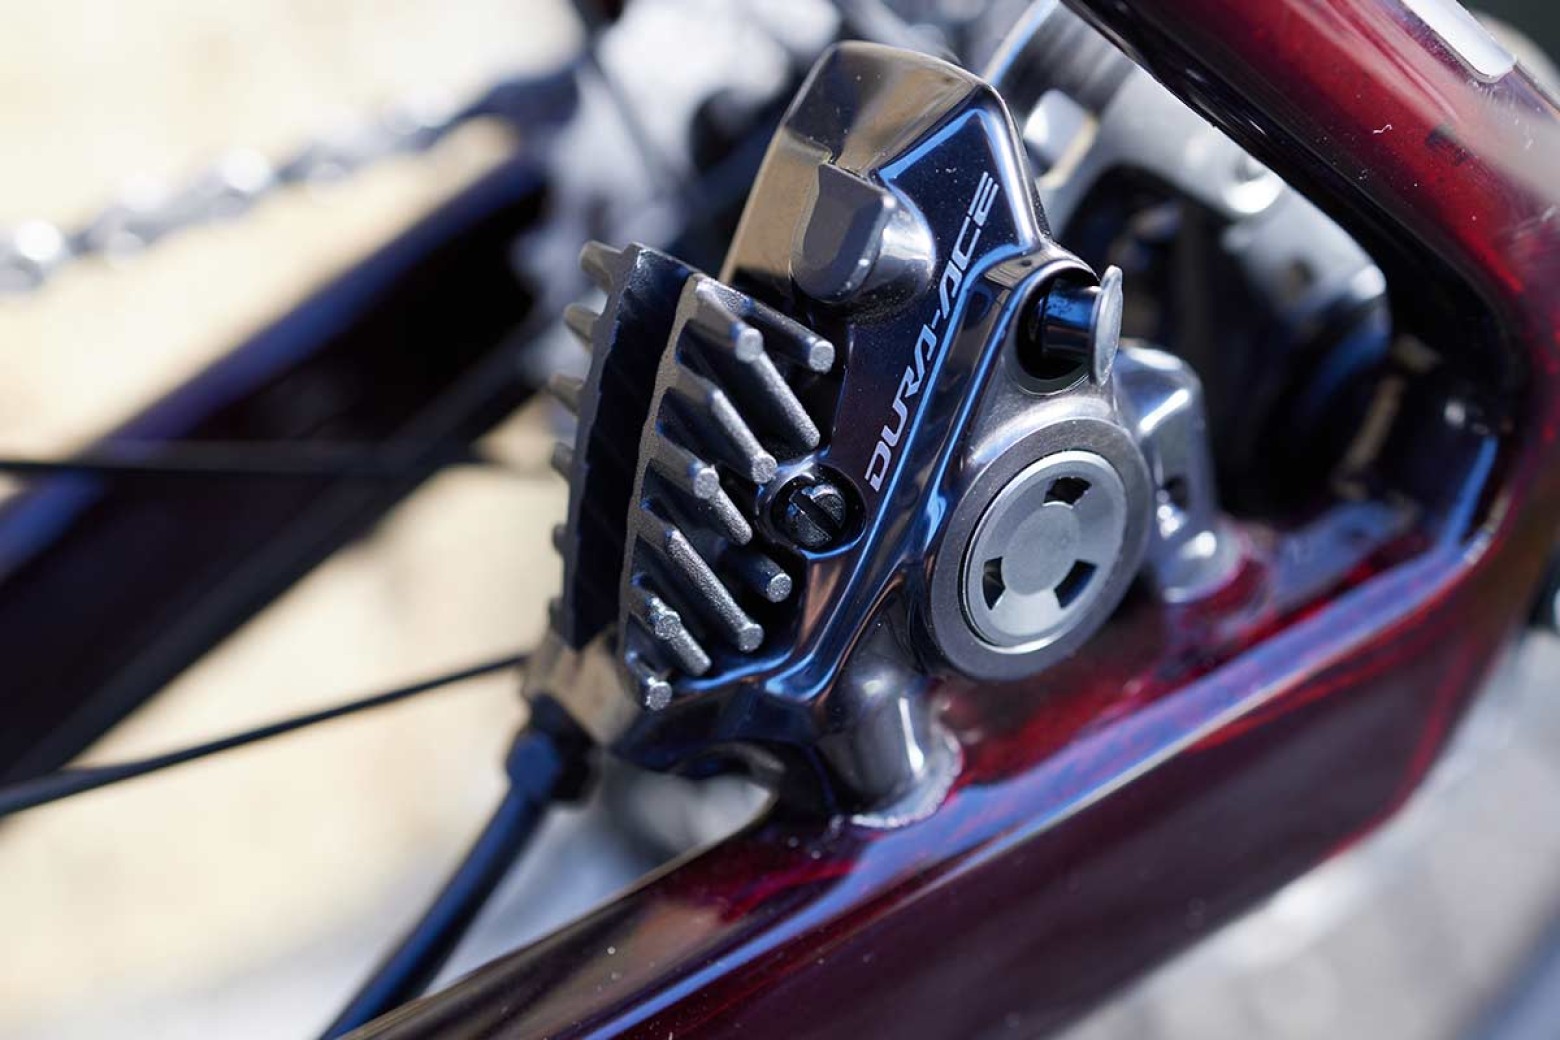 Frenos de disco en tu bicicleta, ¿son seguros?